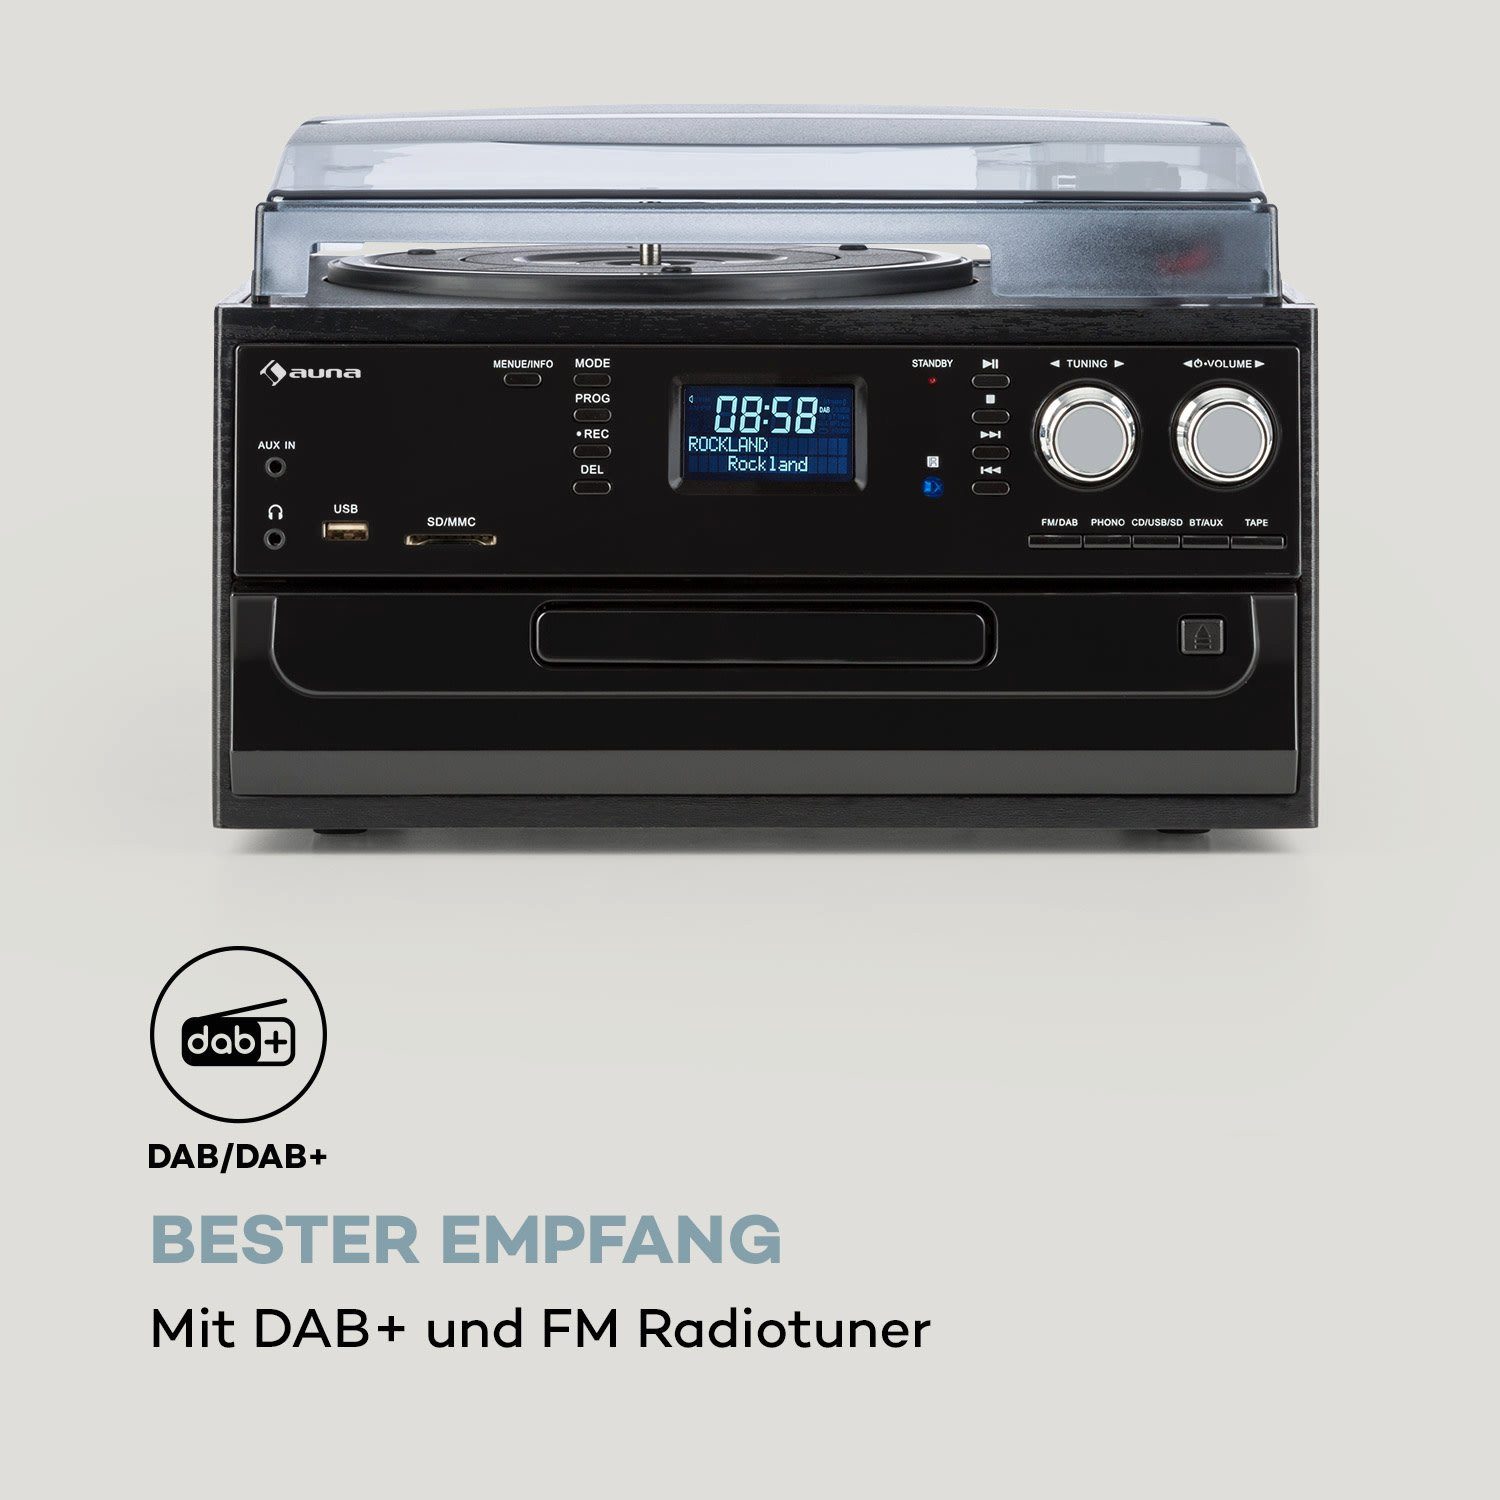 (FM Oakland Auna und Radiotuner) Stereoanlage DAB DAB+